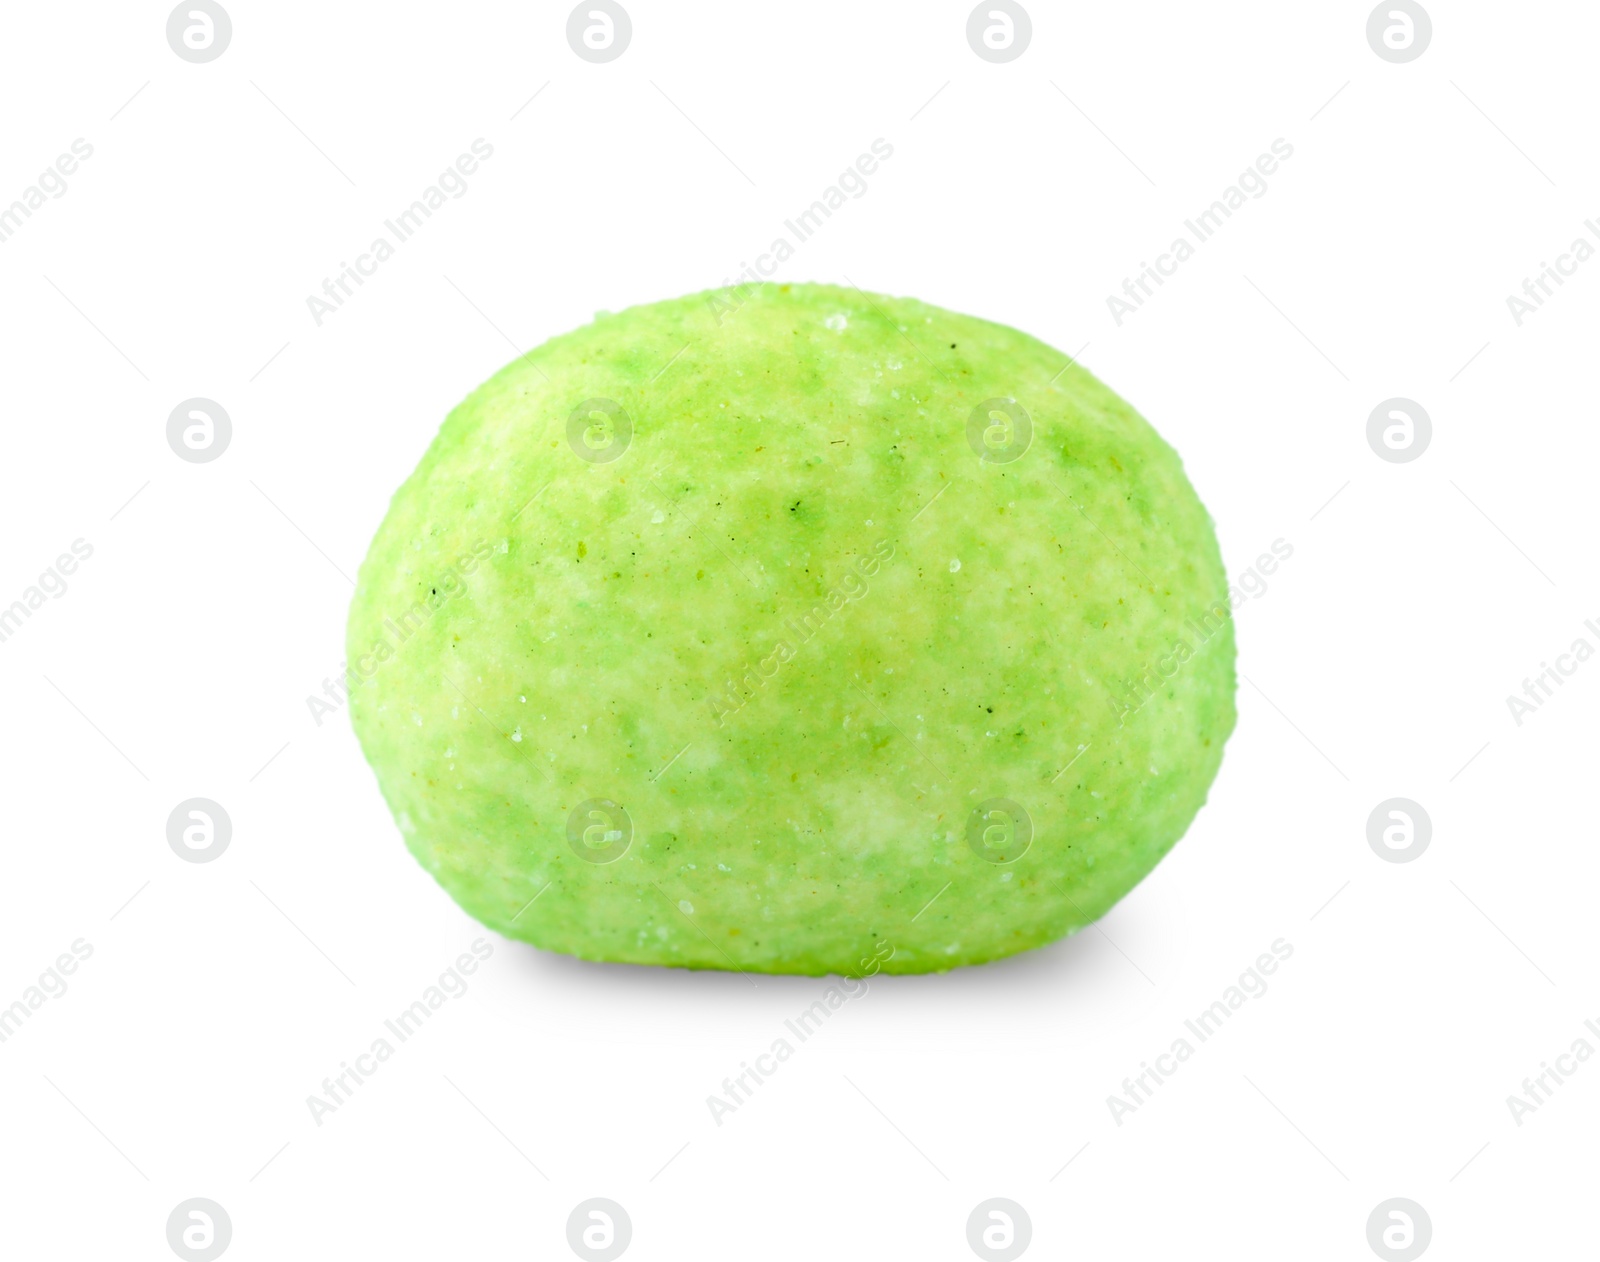 Photo of Tasty wasabi coated peanut isolated on white